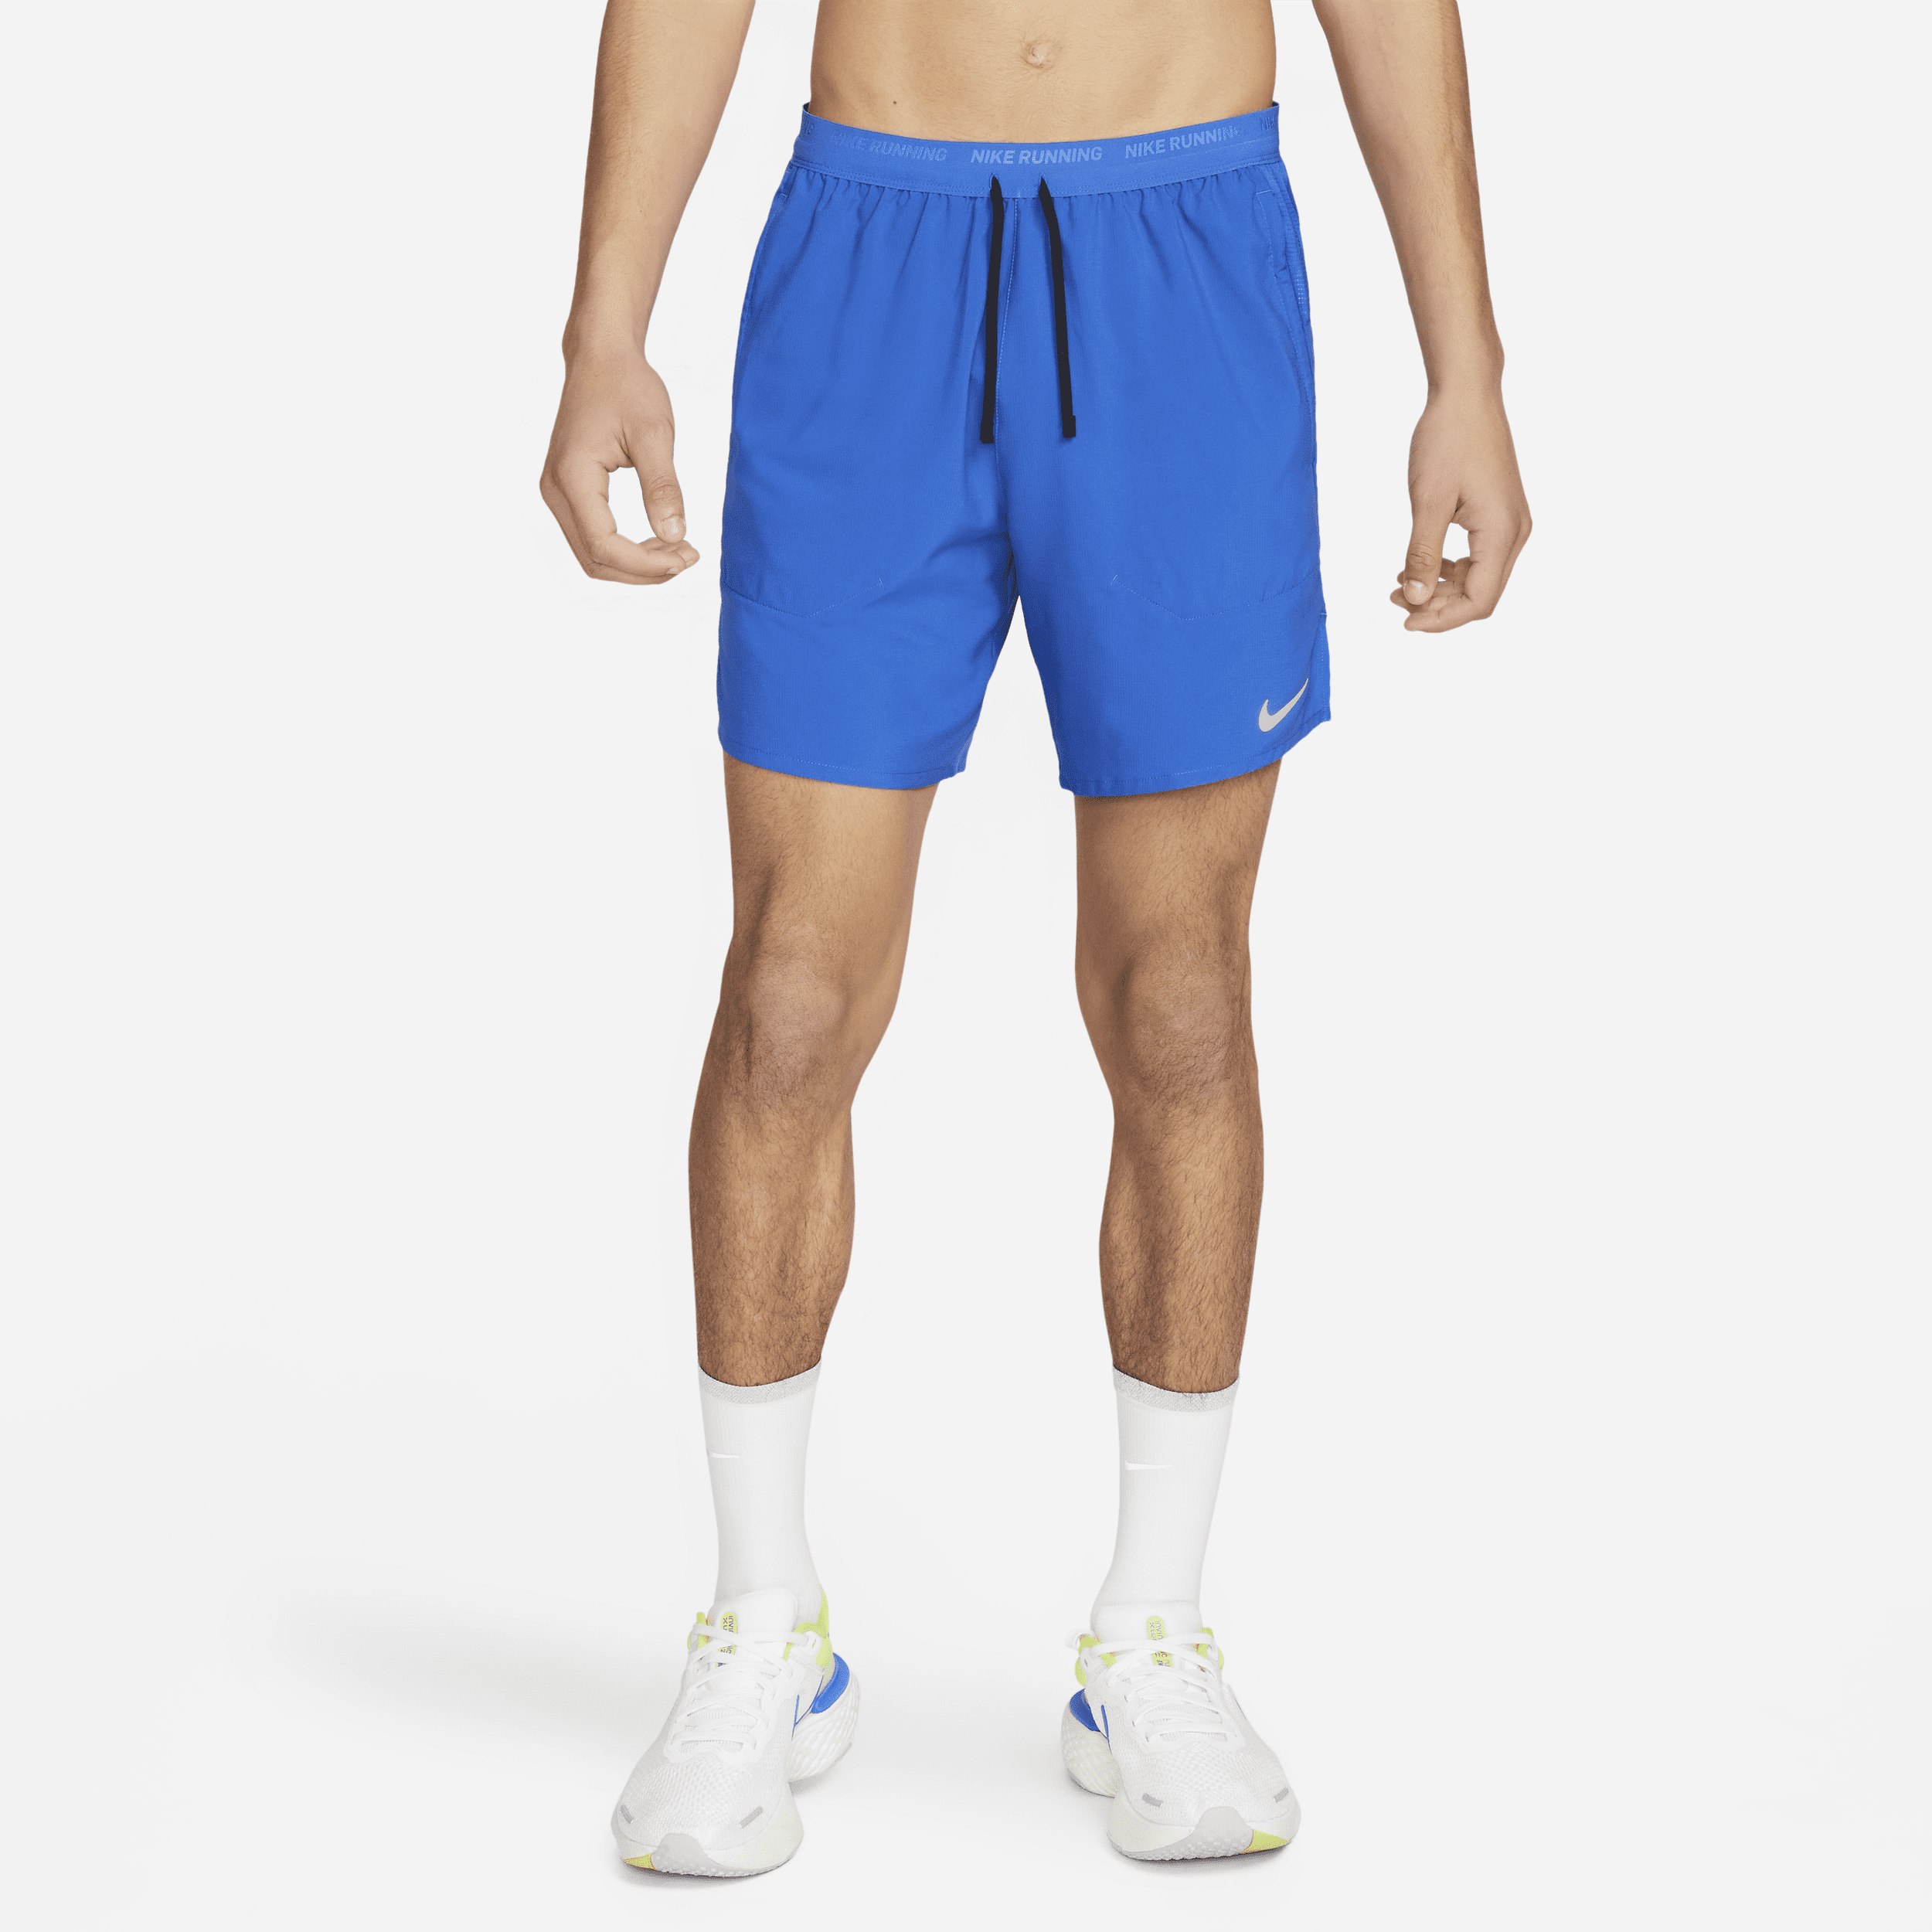 Shorts da running 2 in 1 18 cm Dri-FIT Nike Stride – Uomo - Blu